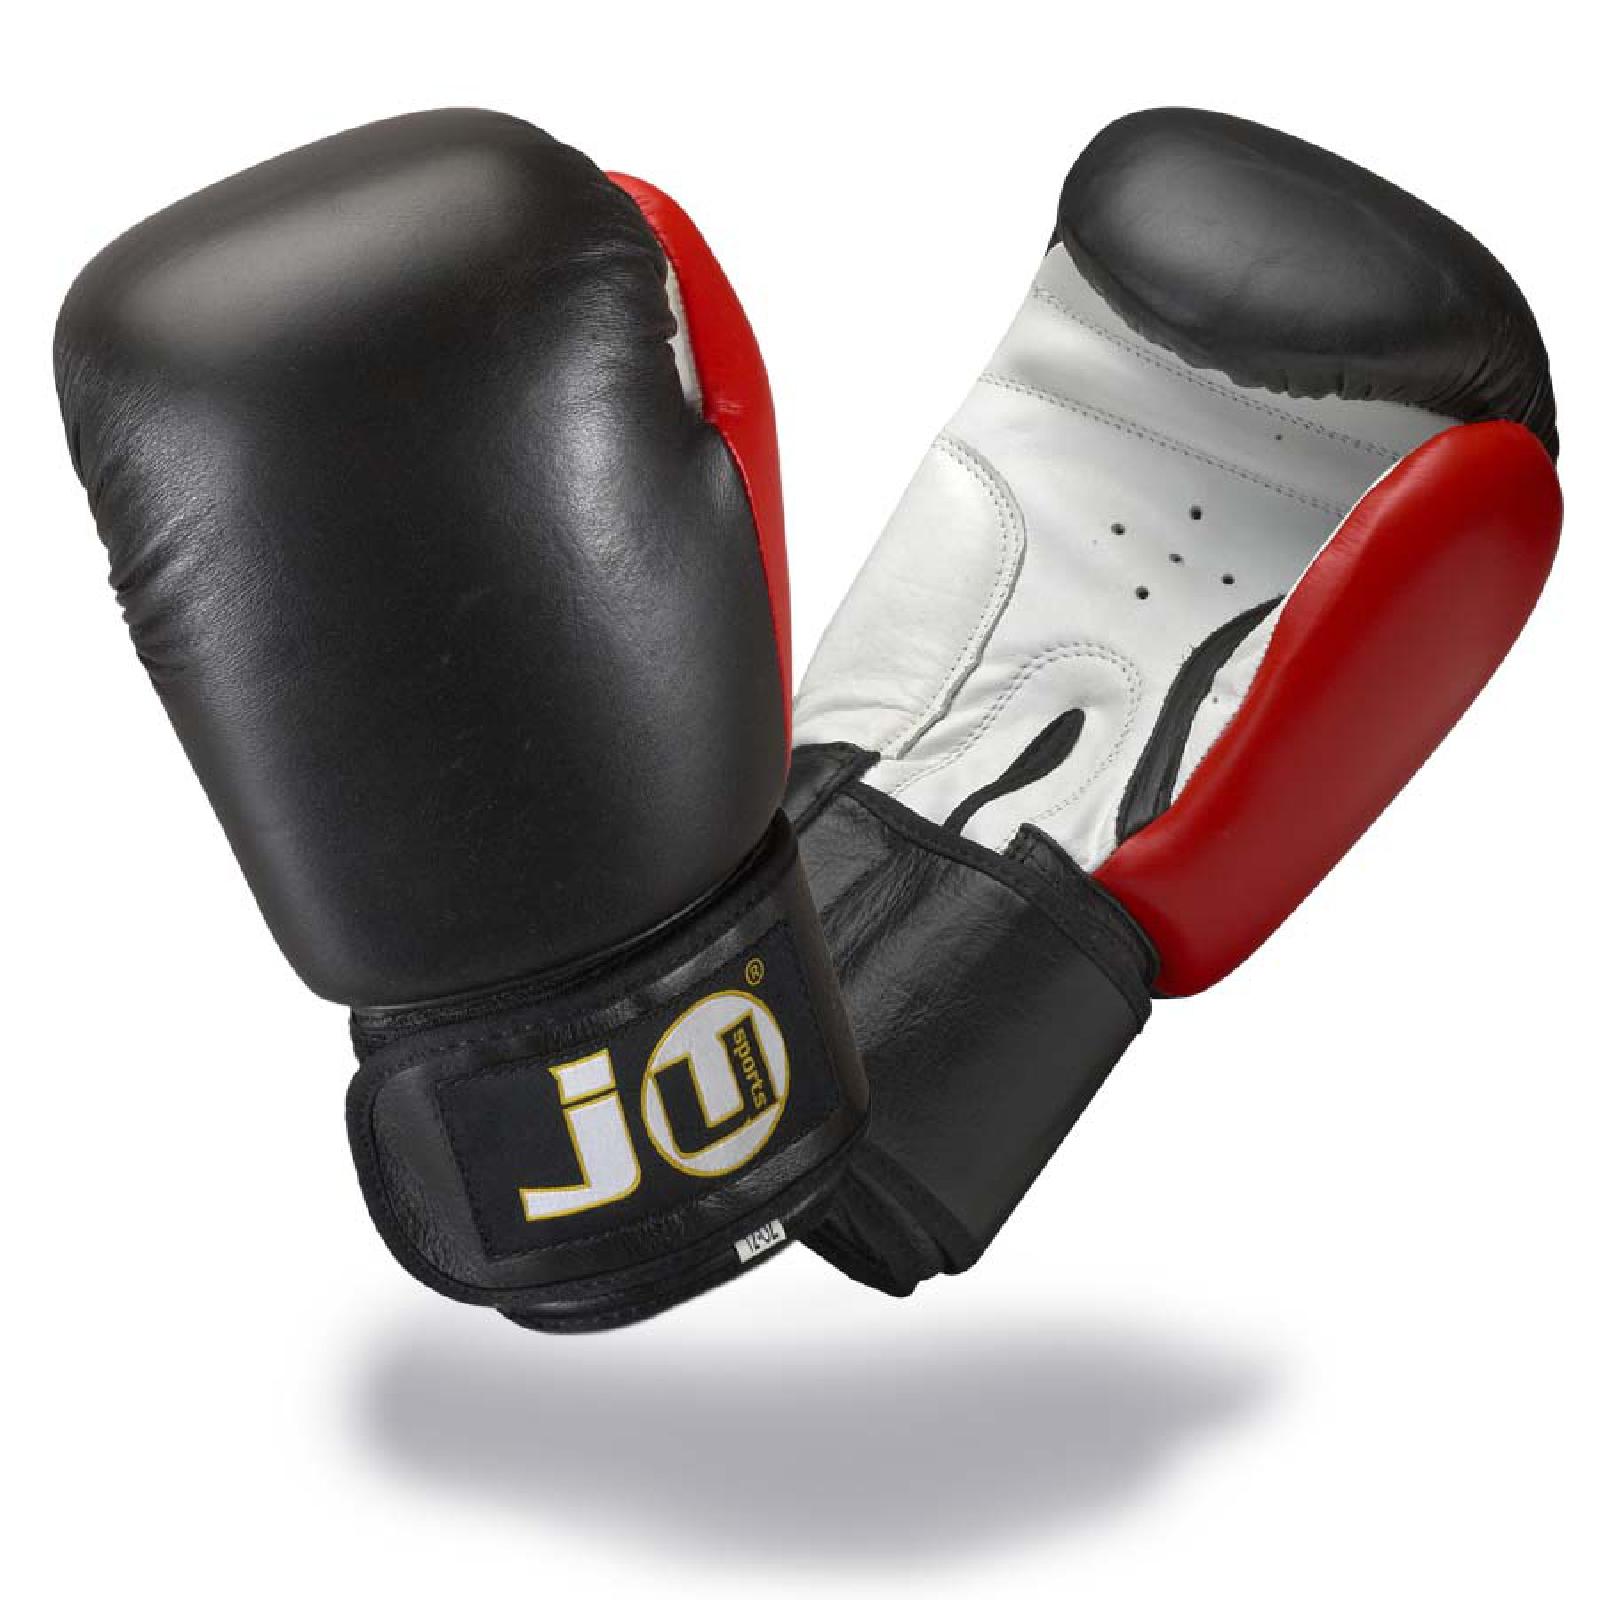 Ju-Sports Boxhandschuhe Leder plus | KAMPFHELDEN